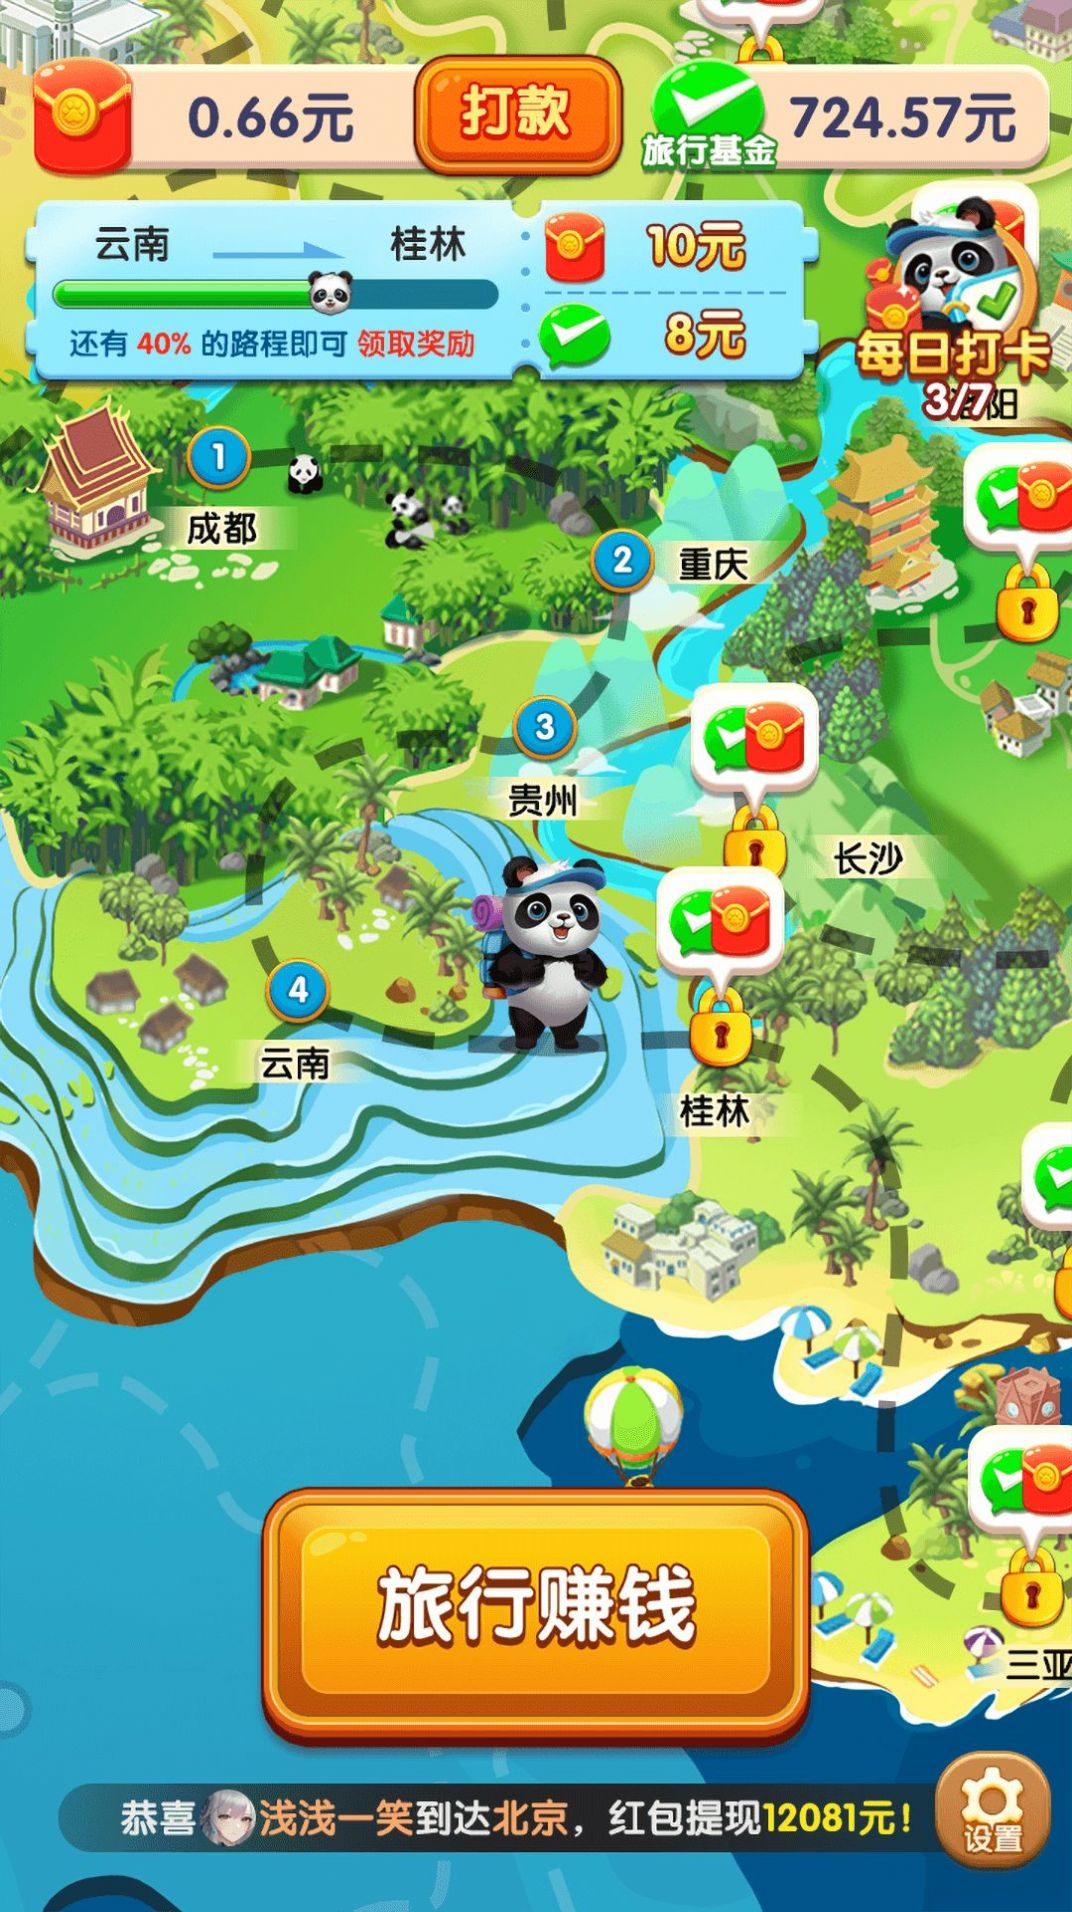 熊猫爱旅行提现500元下载安装v1.2.4.0 最新版本